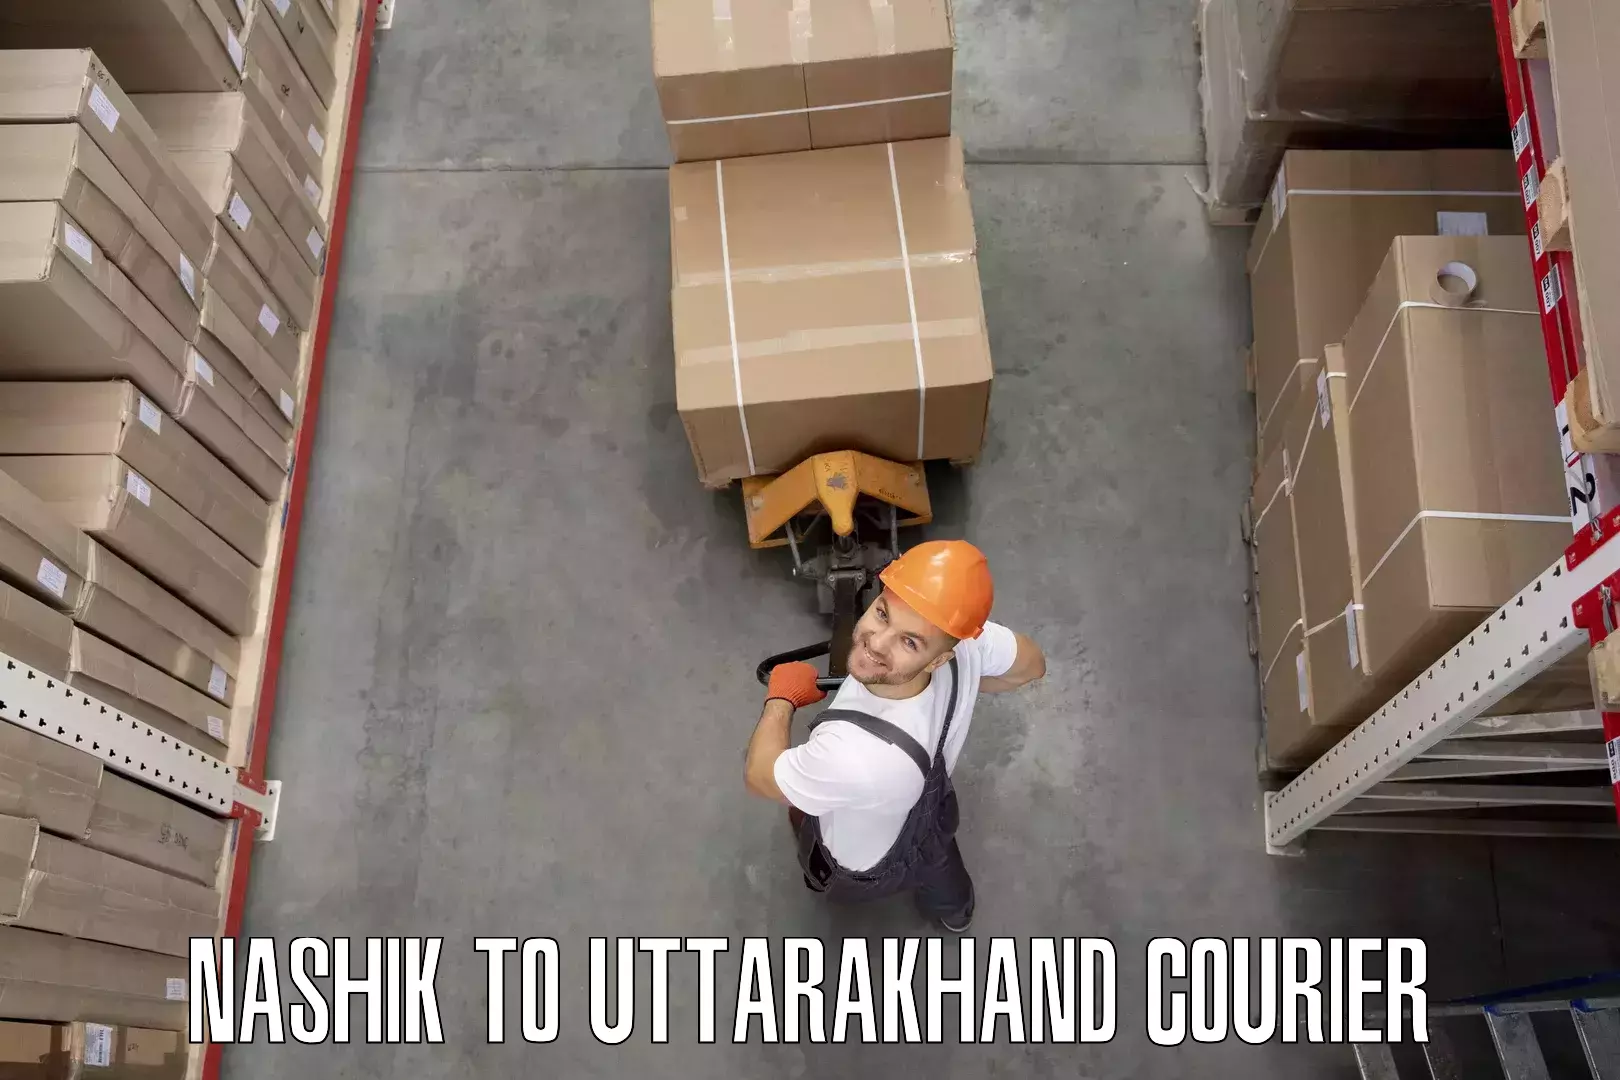 Cost-effective moving options Nashik to Uttarakhand